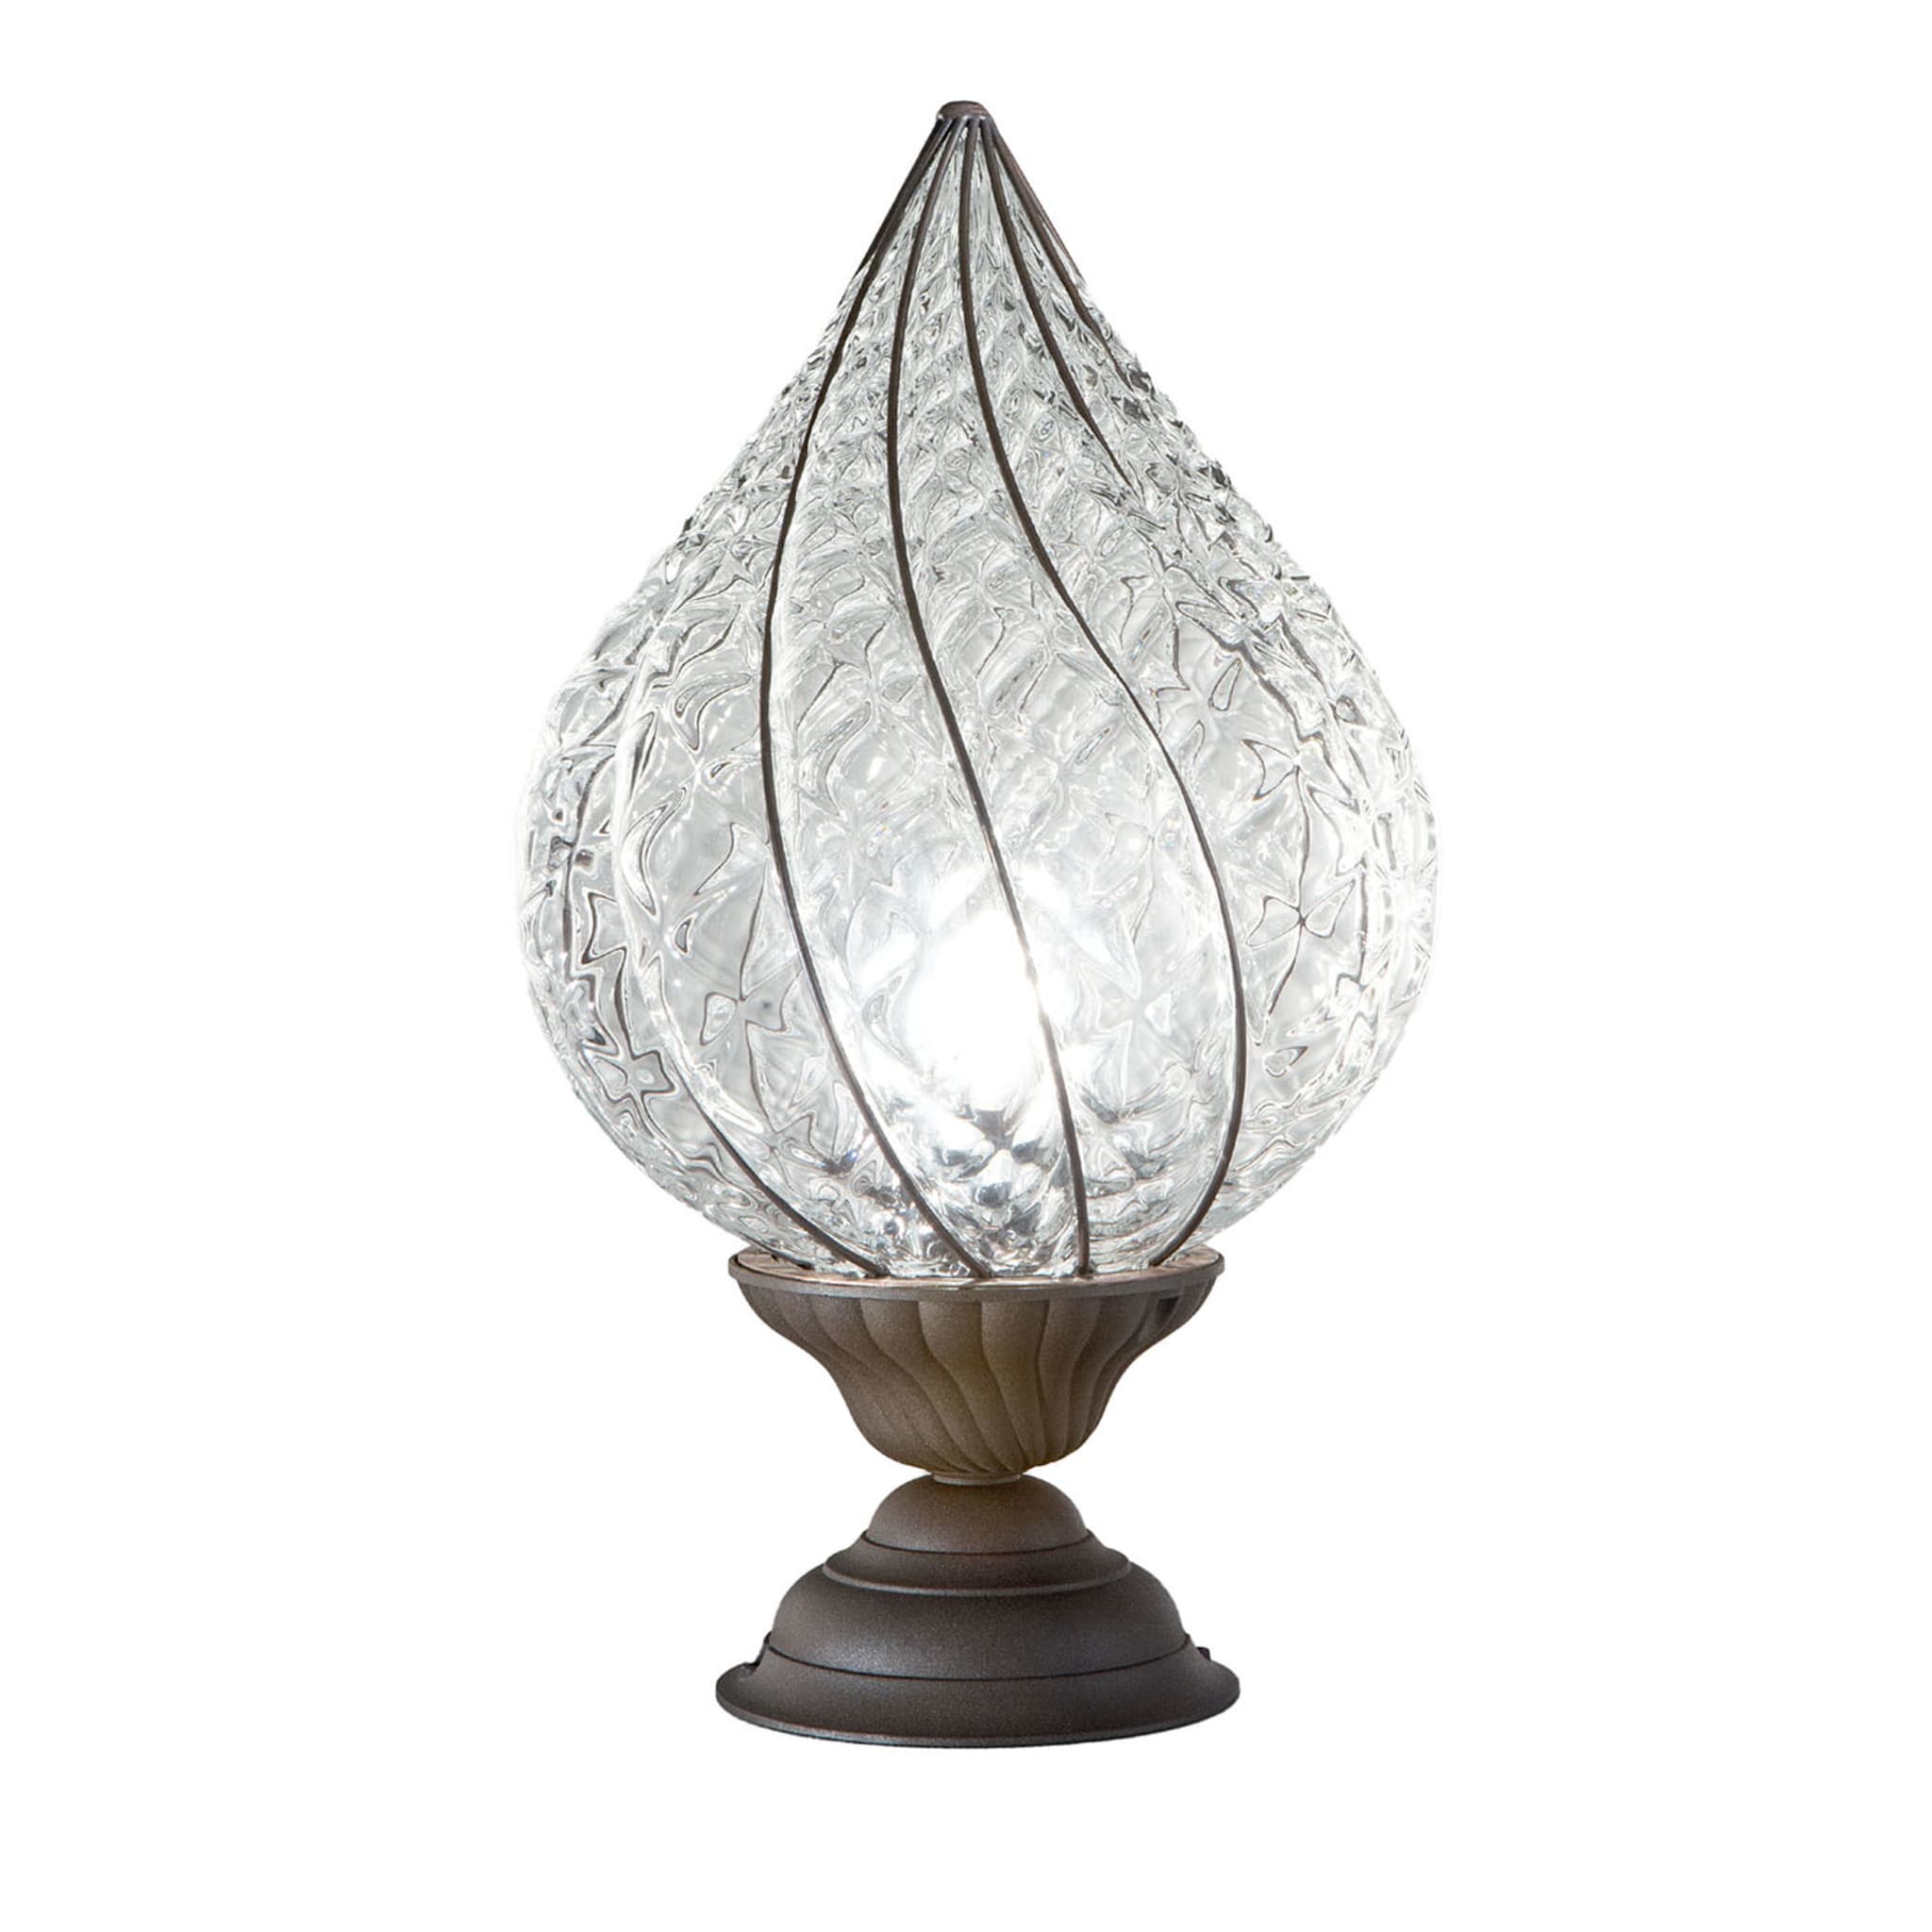 Goccia Crystal Baloton Table Lamp - Main view